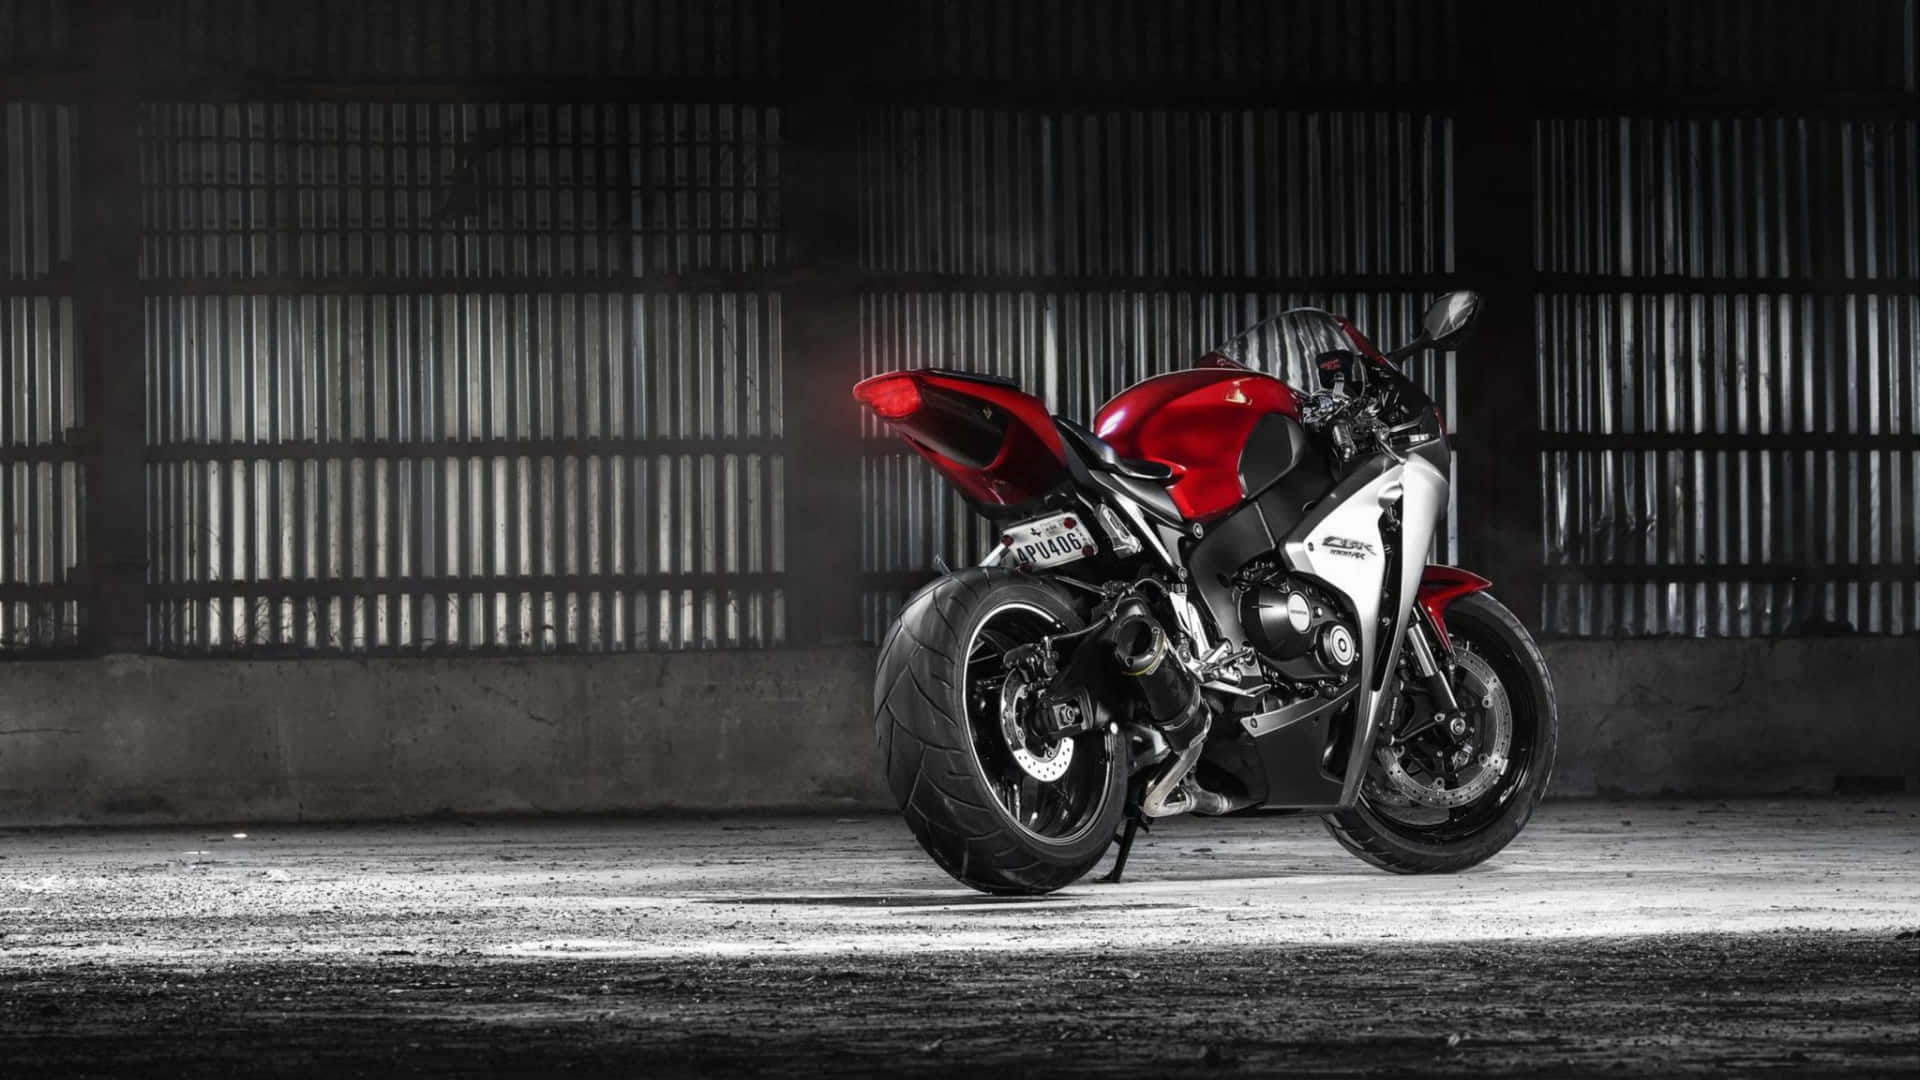 Captivating Ride - Honda Motorcycle Wallpaper